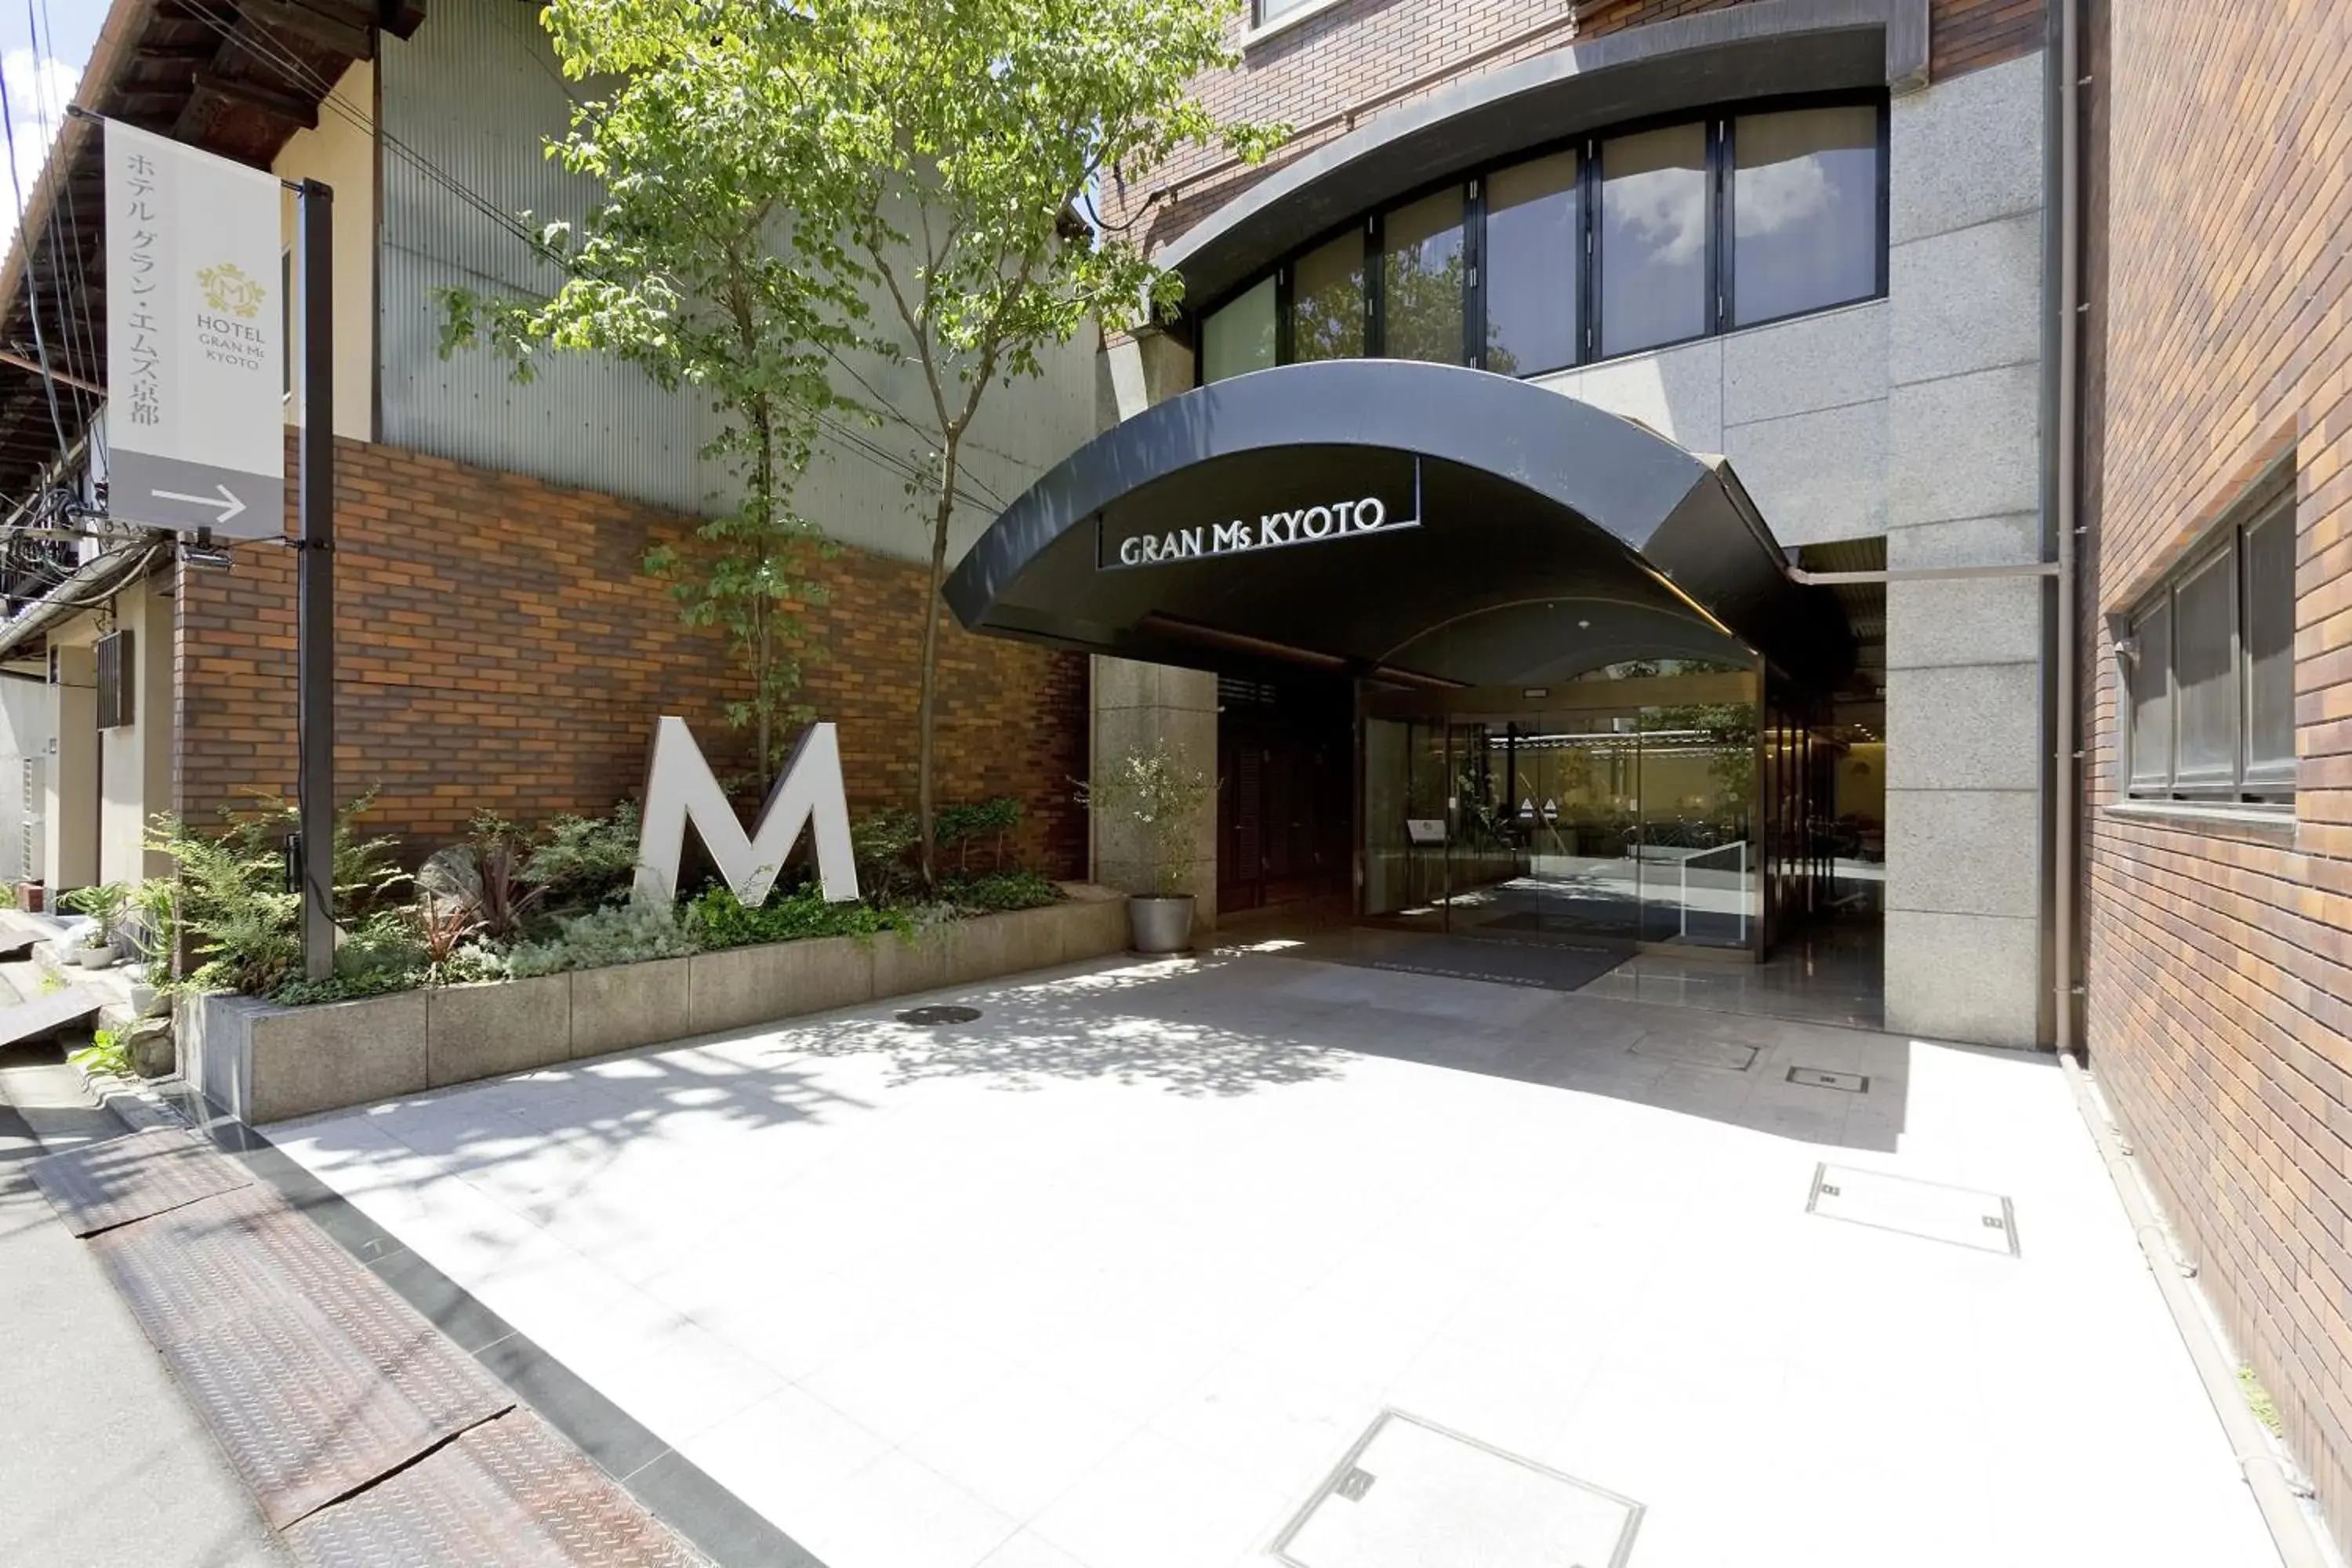 Facade/entrance in Hotel Gran Ms Kyoto